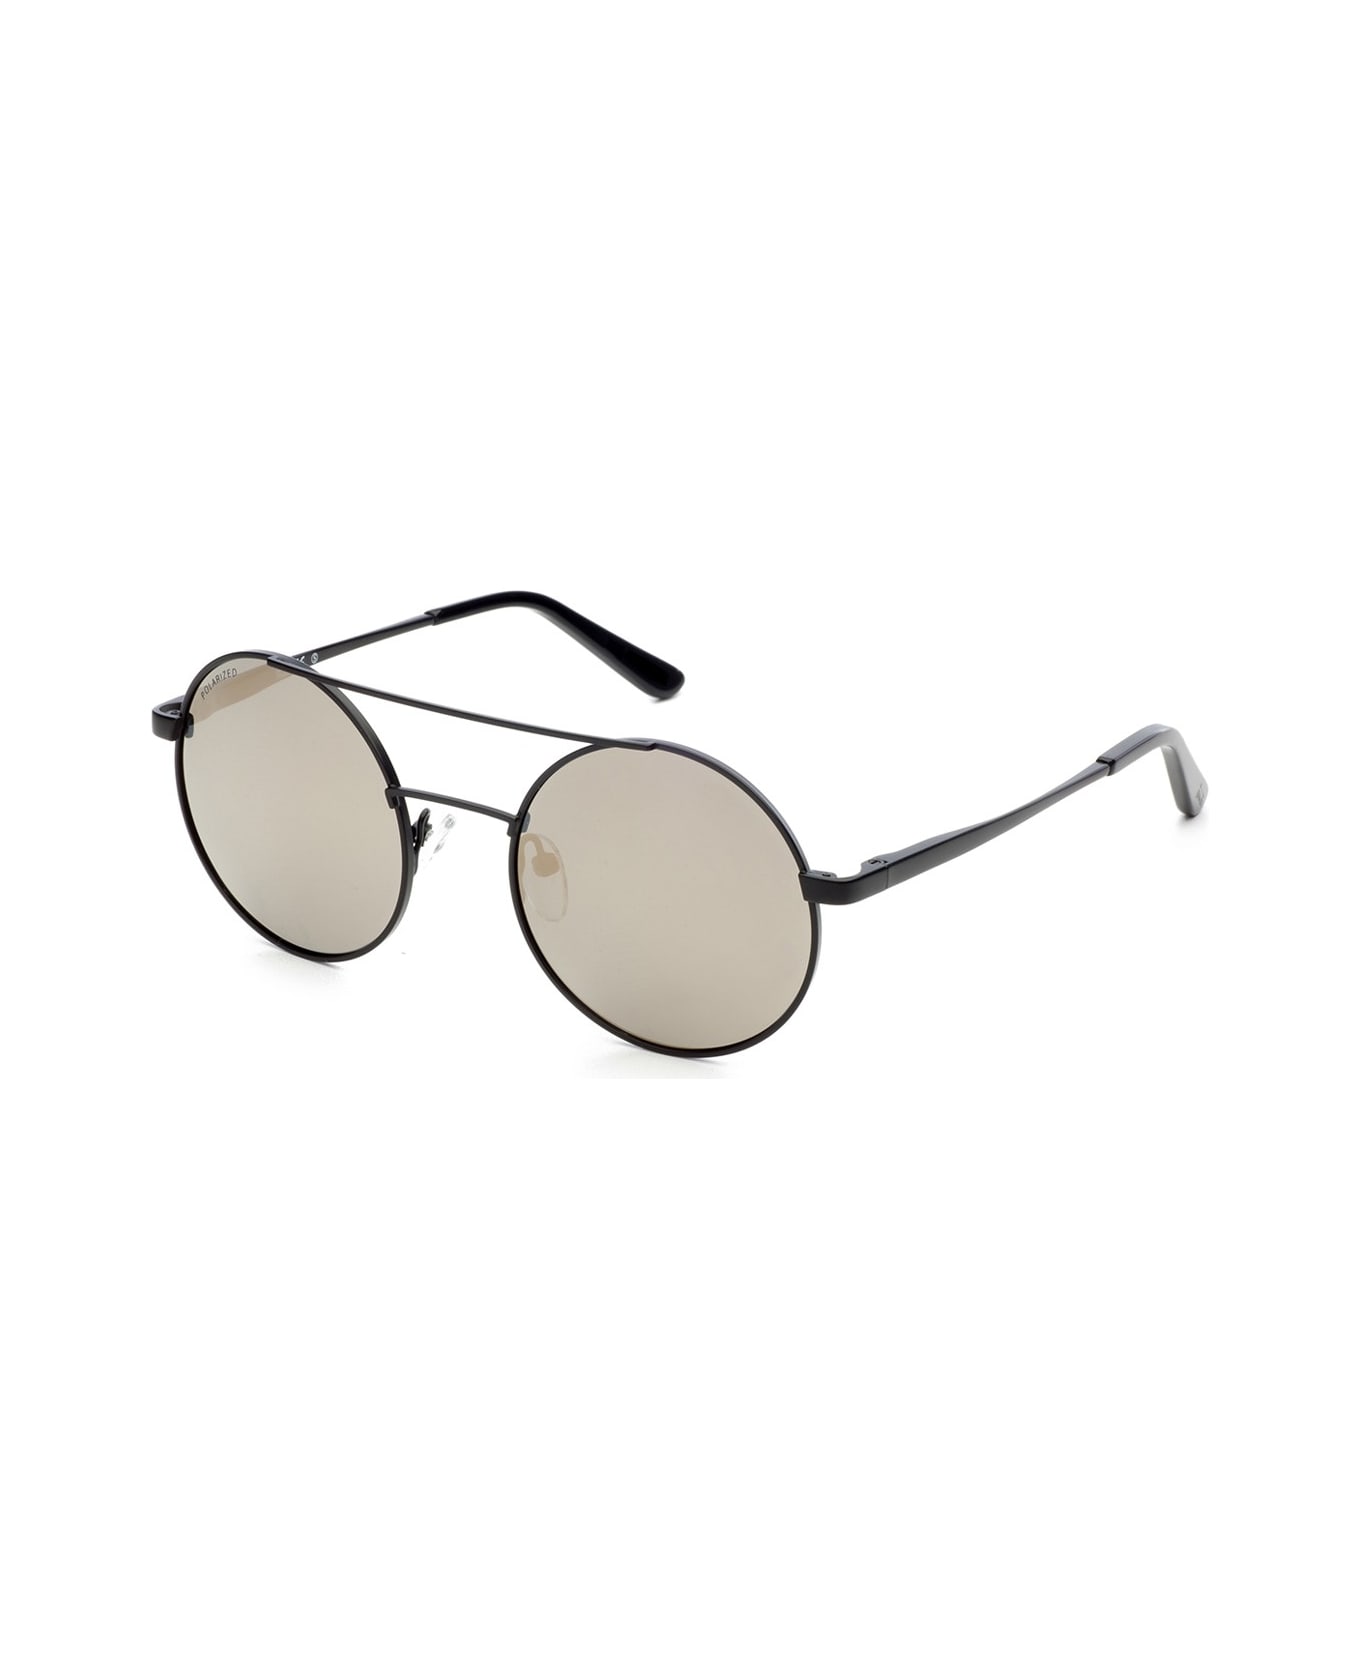 Trudi Td530 Sunglasses - Nero